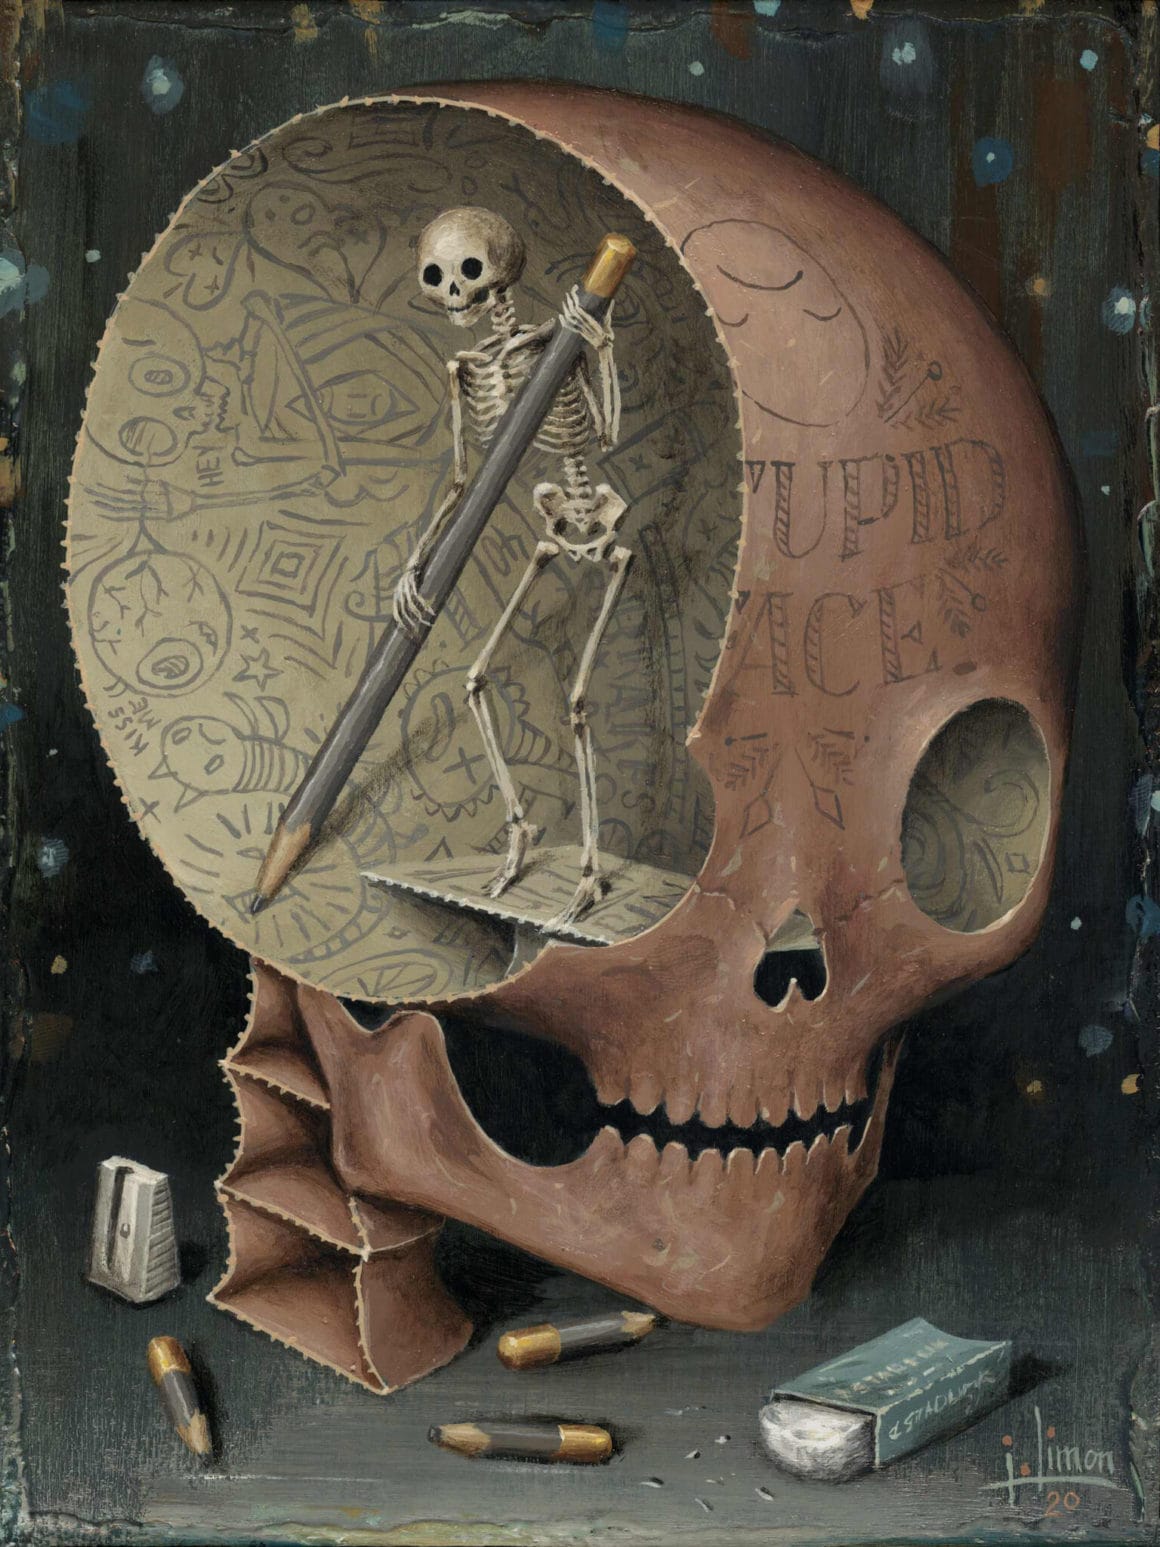 Ce tableau représente un squelette qui est en train de dessiner dans le crâne d'un autre squelette.